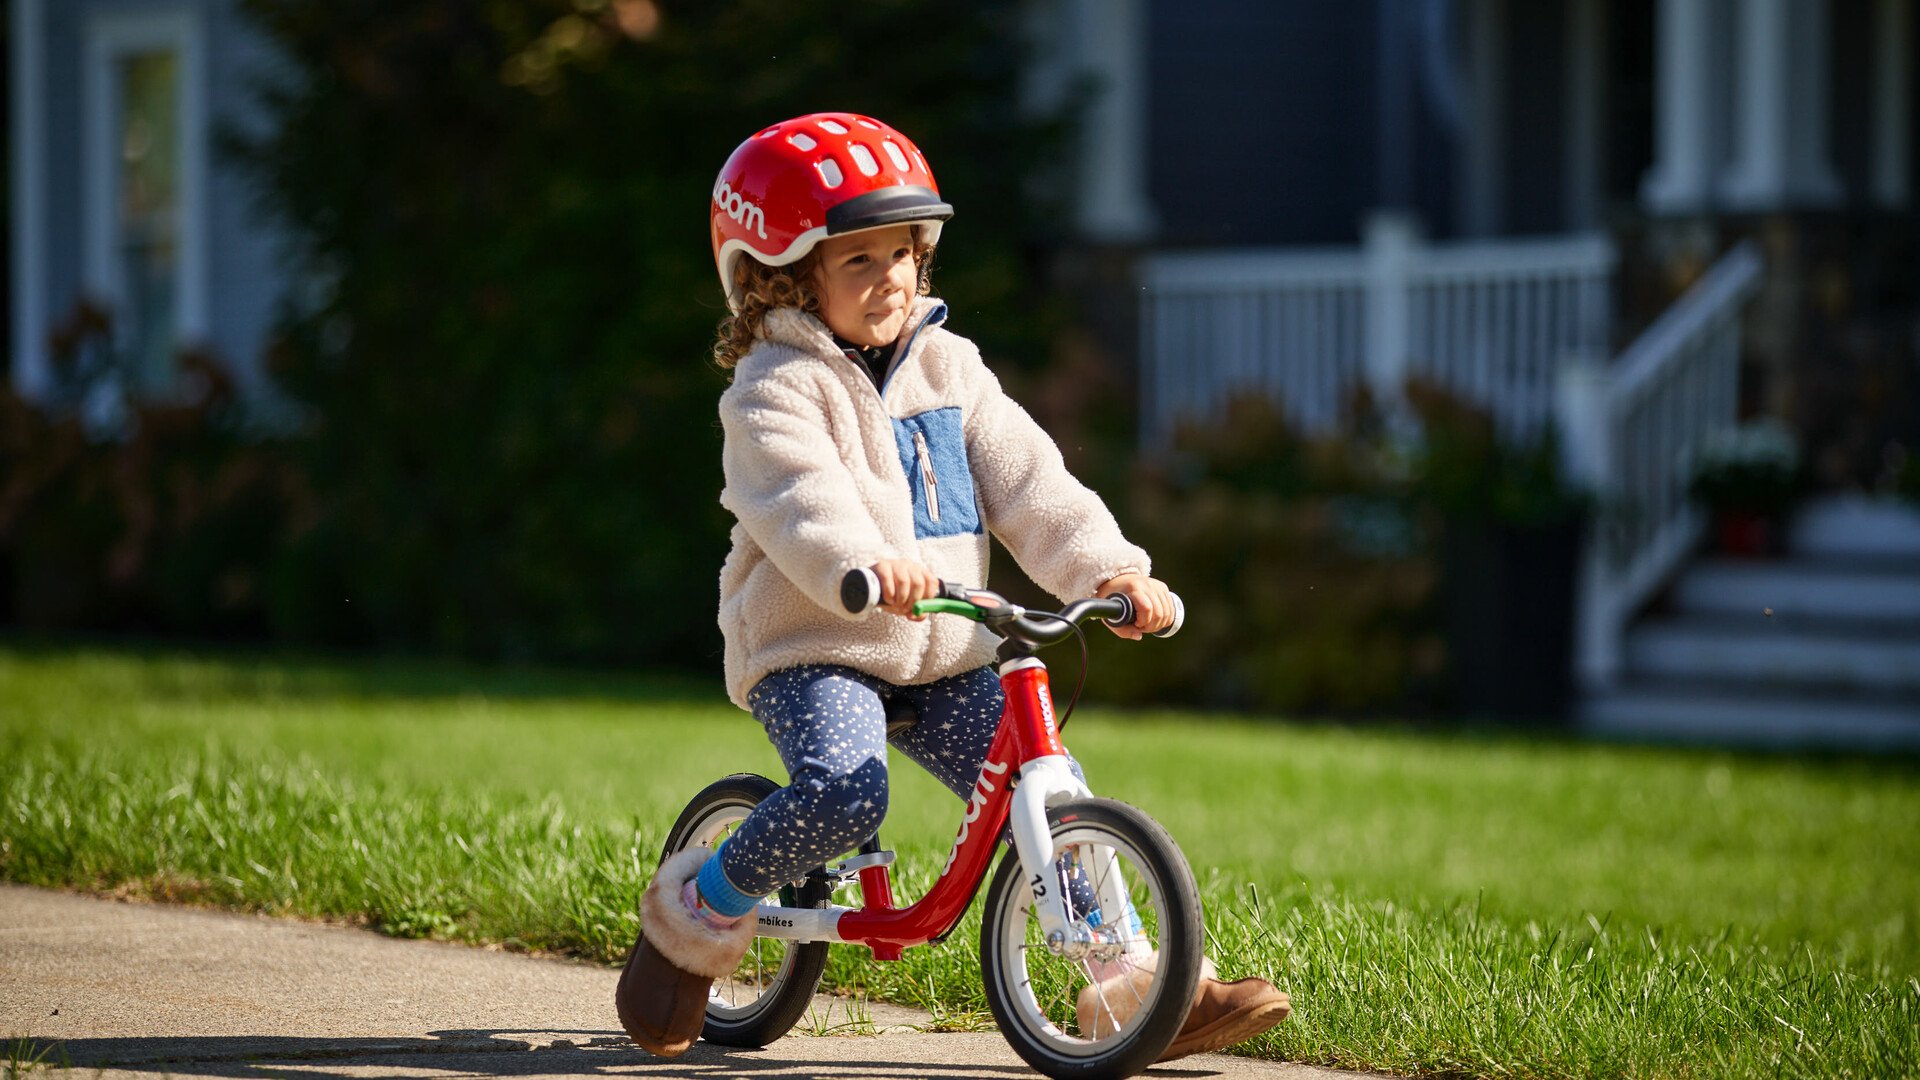 Un petit enfant a l’air très heureux en roulant sur le trottoir avec sa draisienne woom rouge et son casque woom assorti.